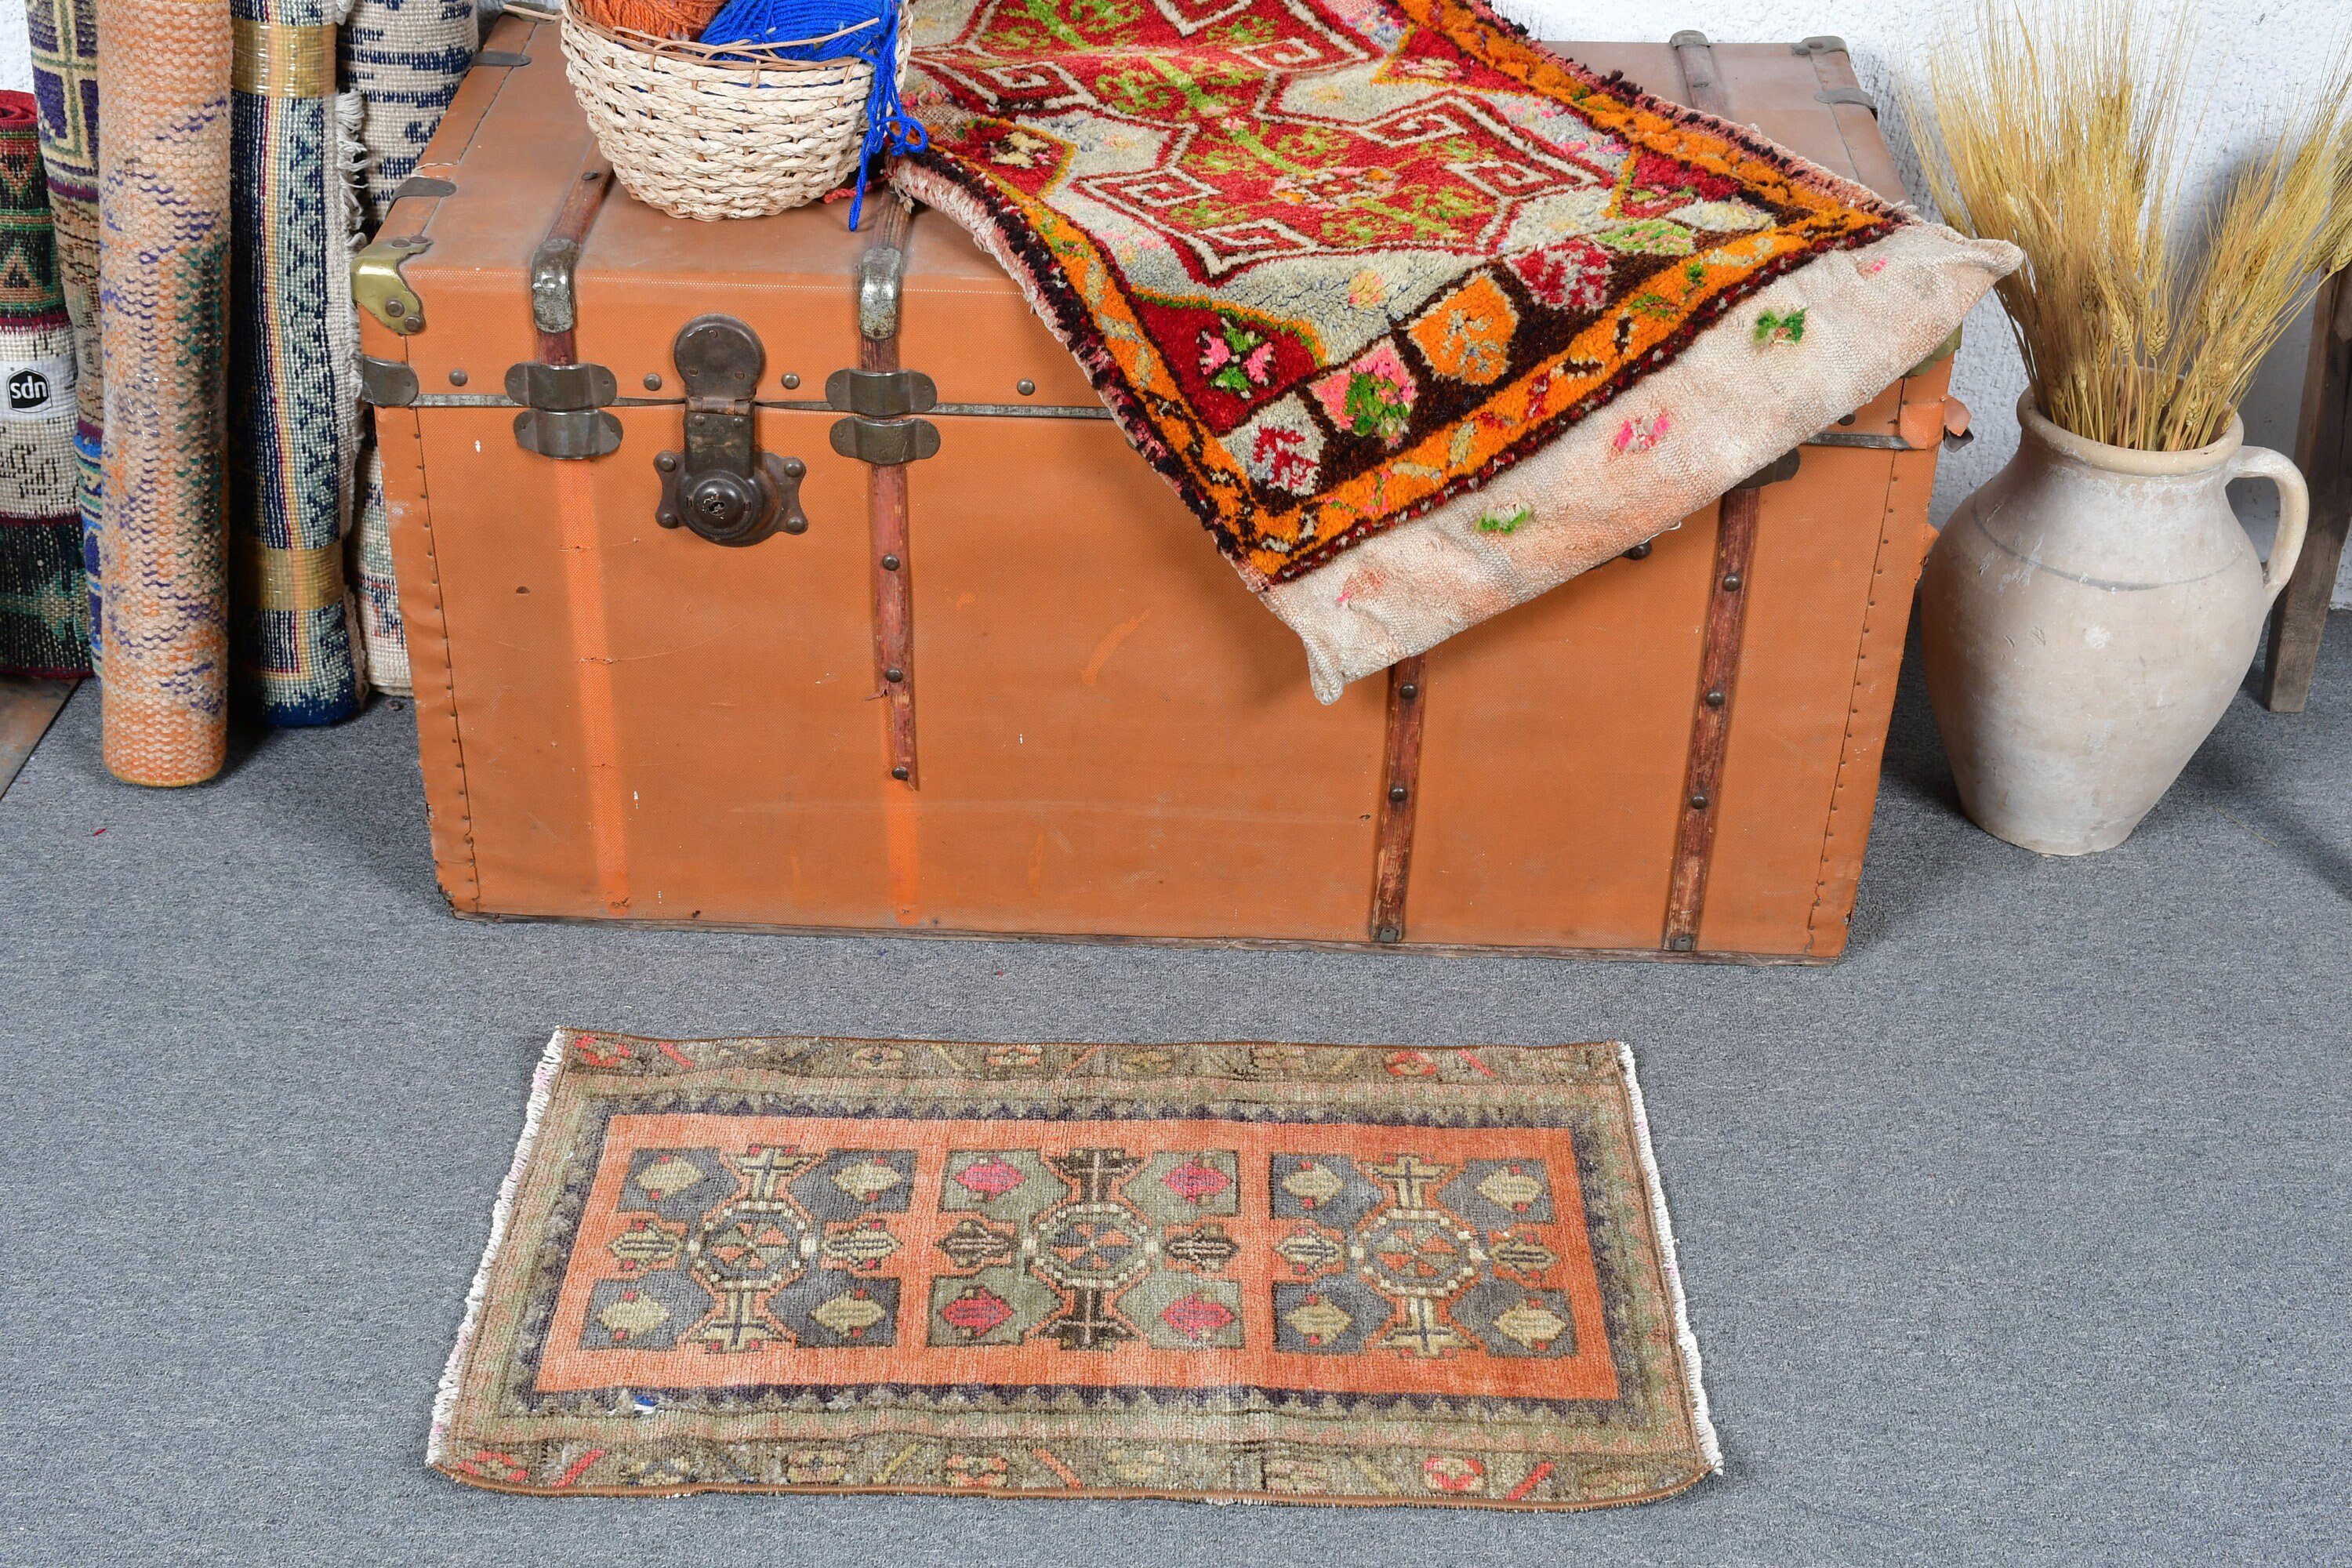 Türk Halısı, 1.4x2.3 ft Küçük Halı, Vintage Halı, Oryantal Halı, Duvara Asılı Halılar, Kahverengi Yün Halı, Yer Halısı, Banyo Halıları, Bohem Halısı